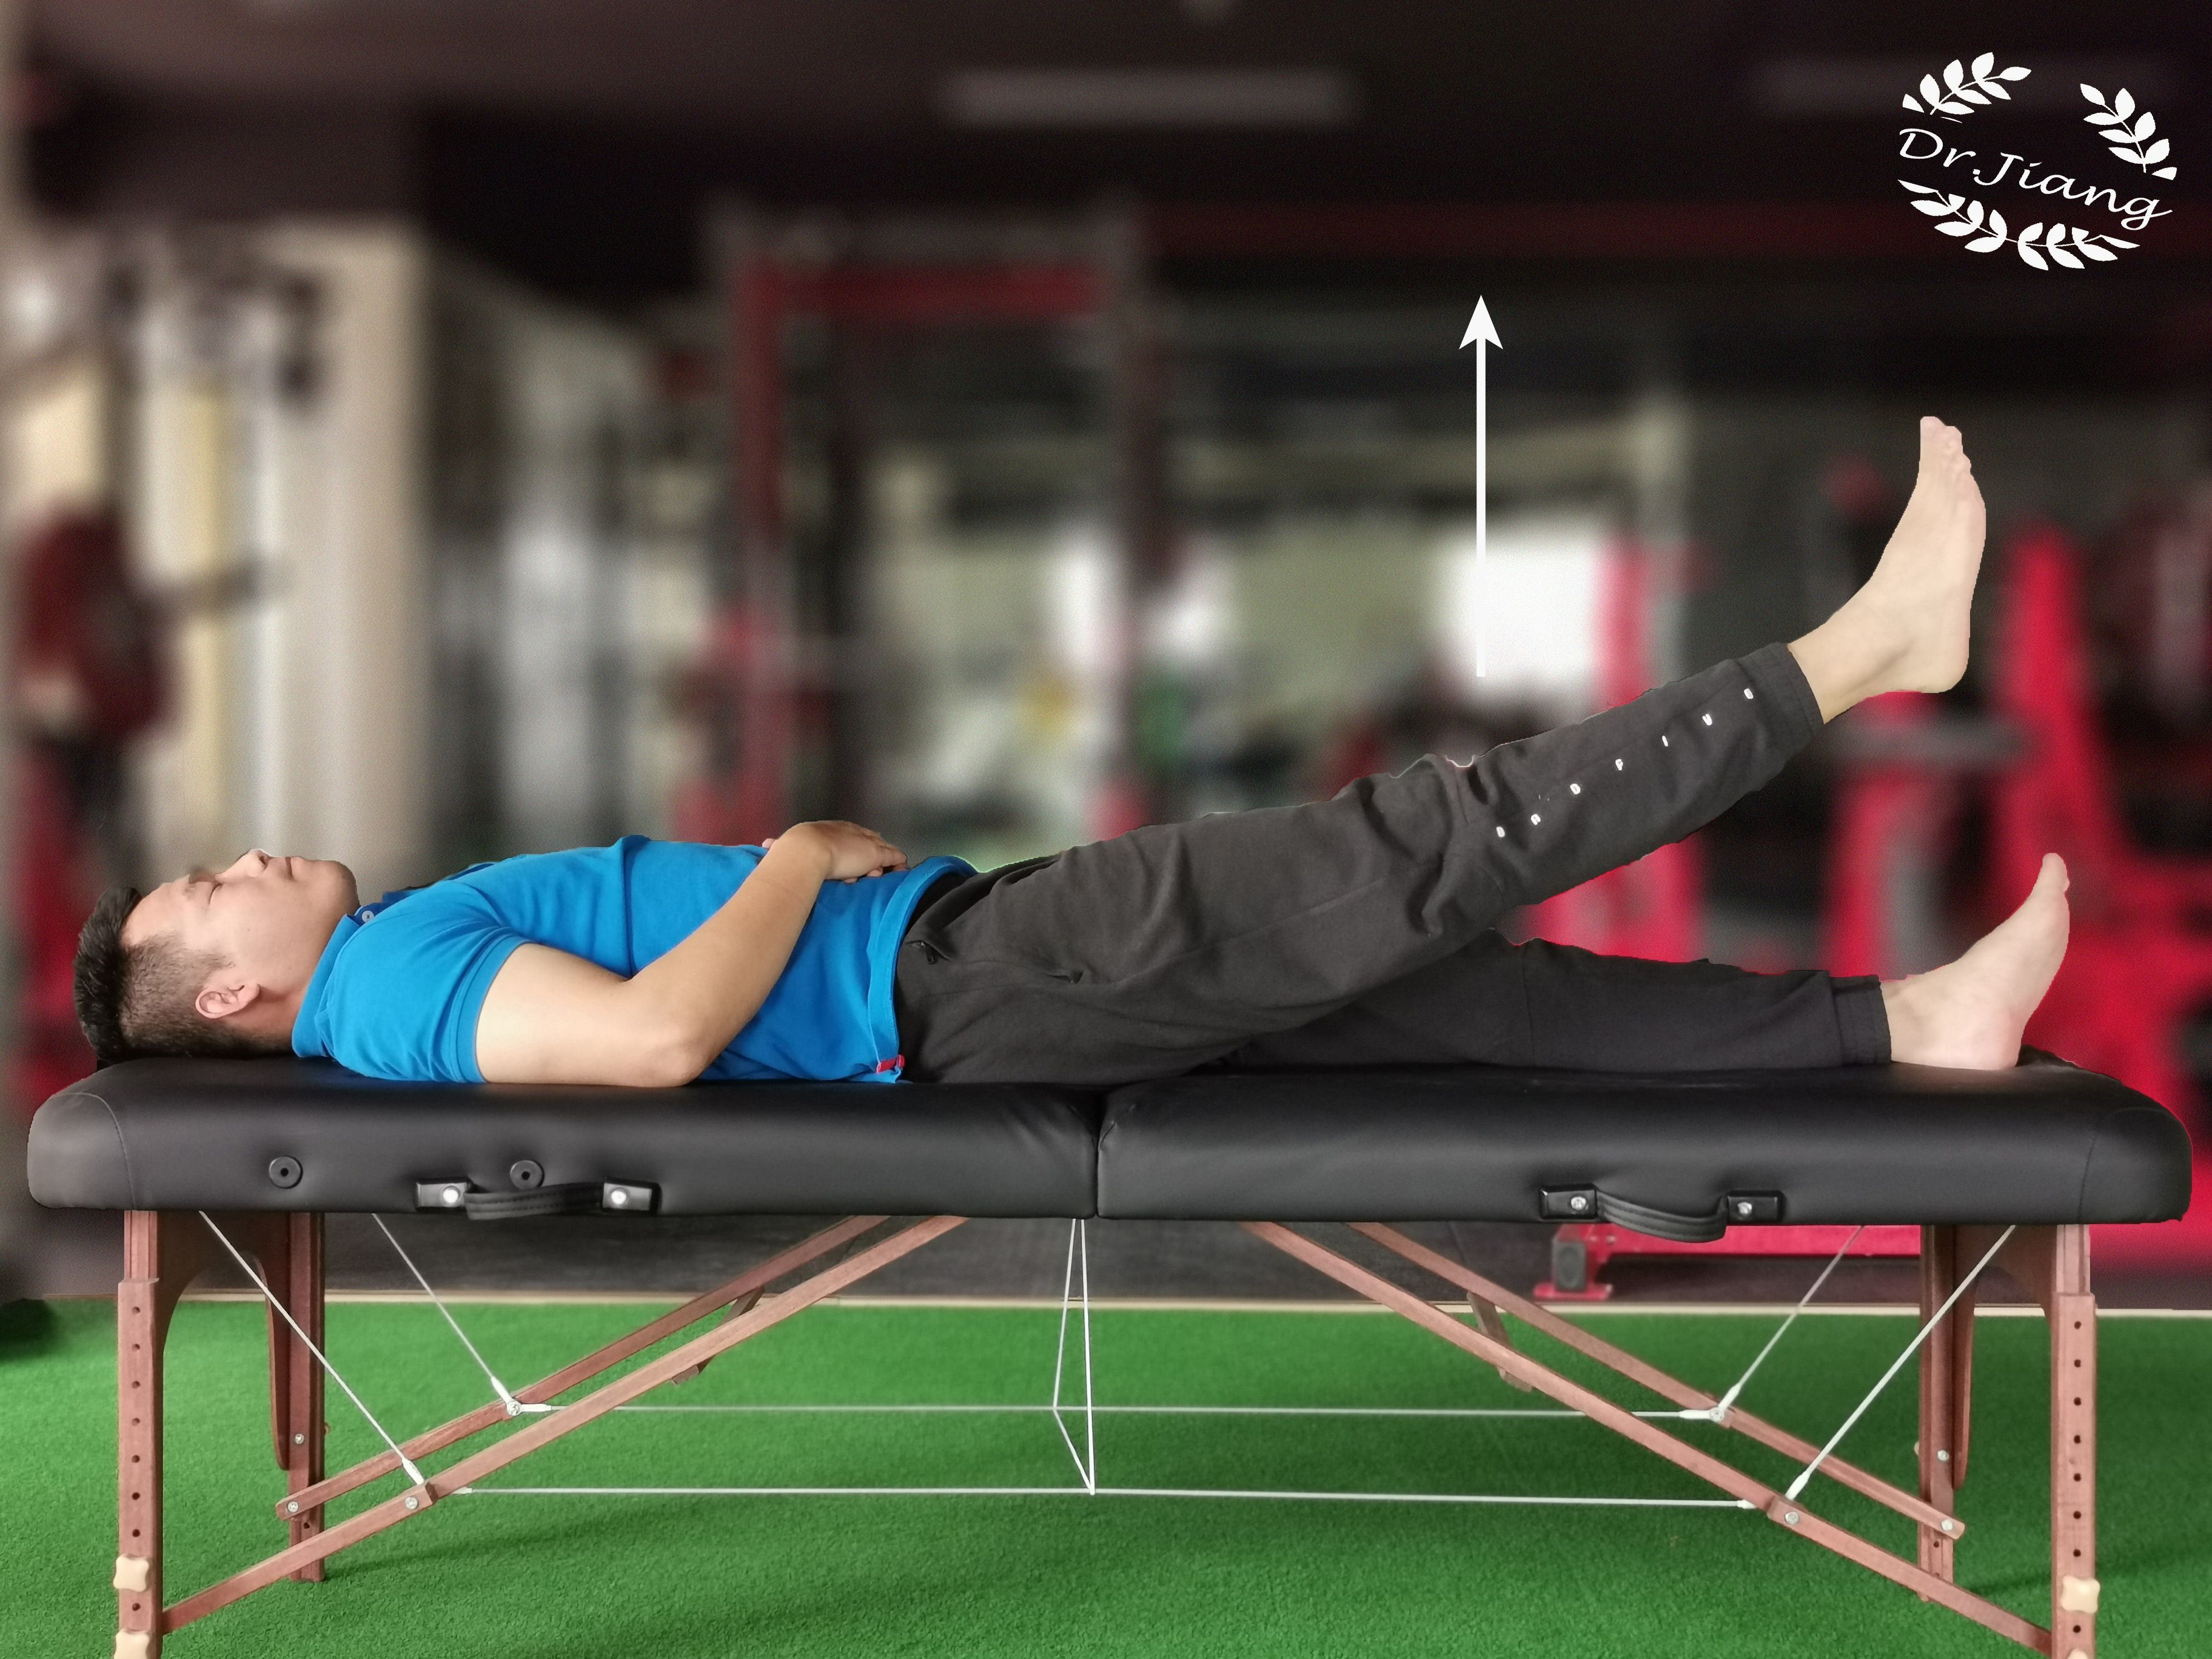 注意:训练过程中腰部不要离开床面